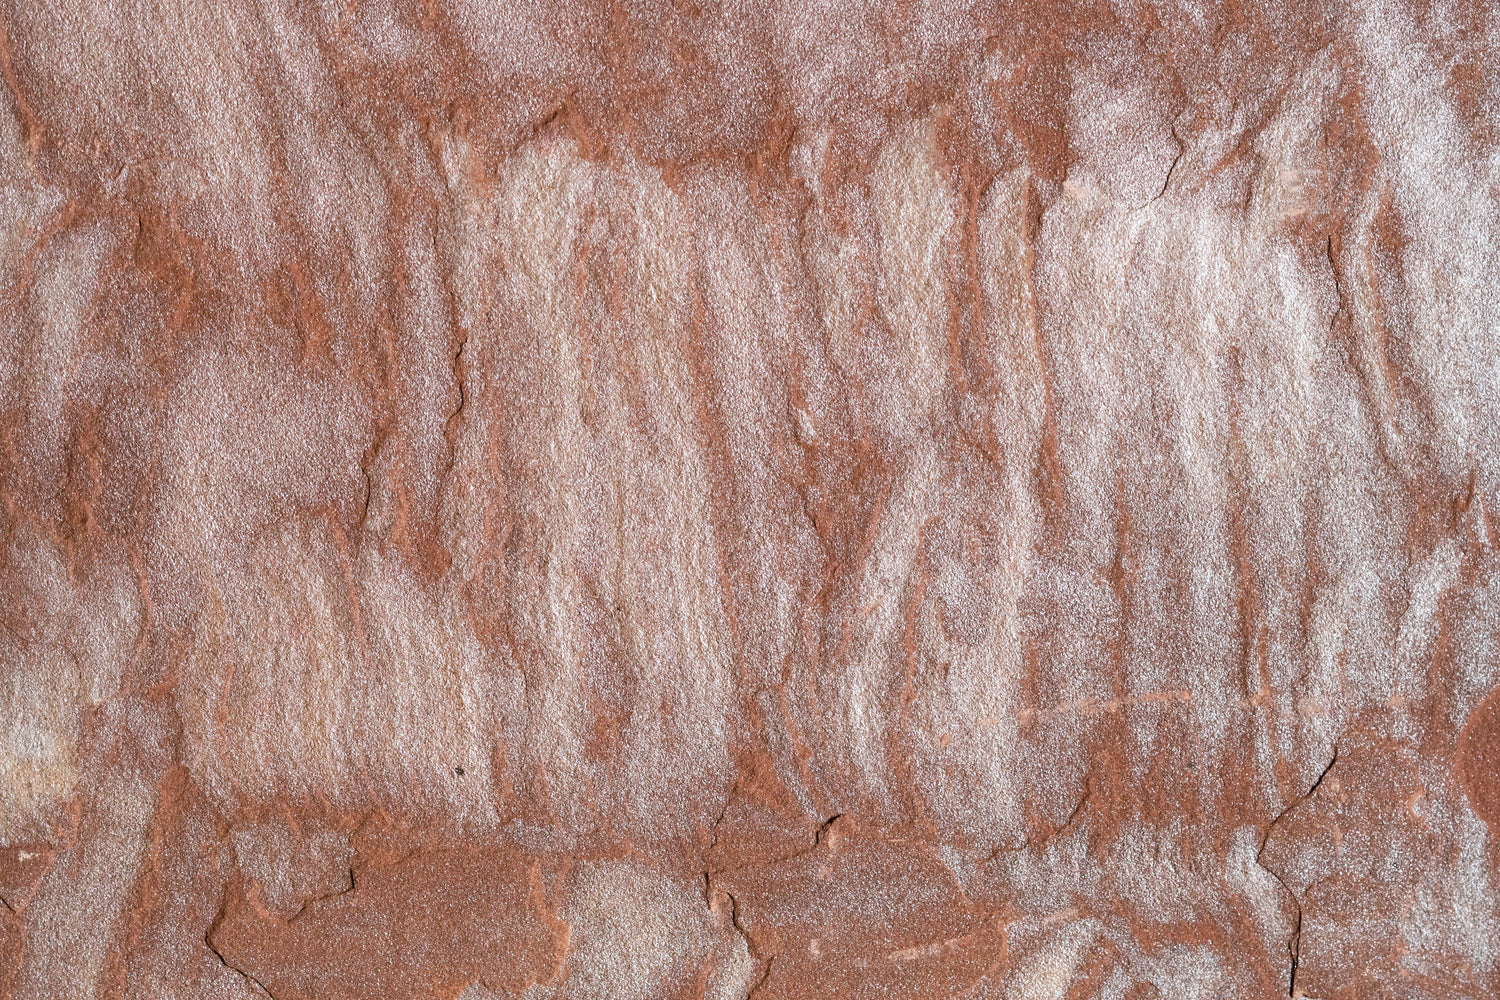 Full Tile Sample - Pink Leather Sandstone Tile - 12" x 12" x 3/8" Natural Cleft Face & Back